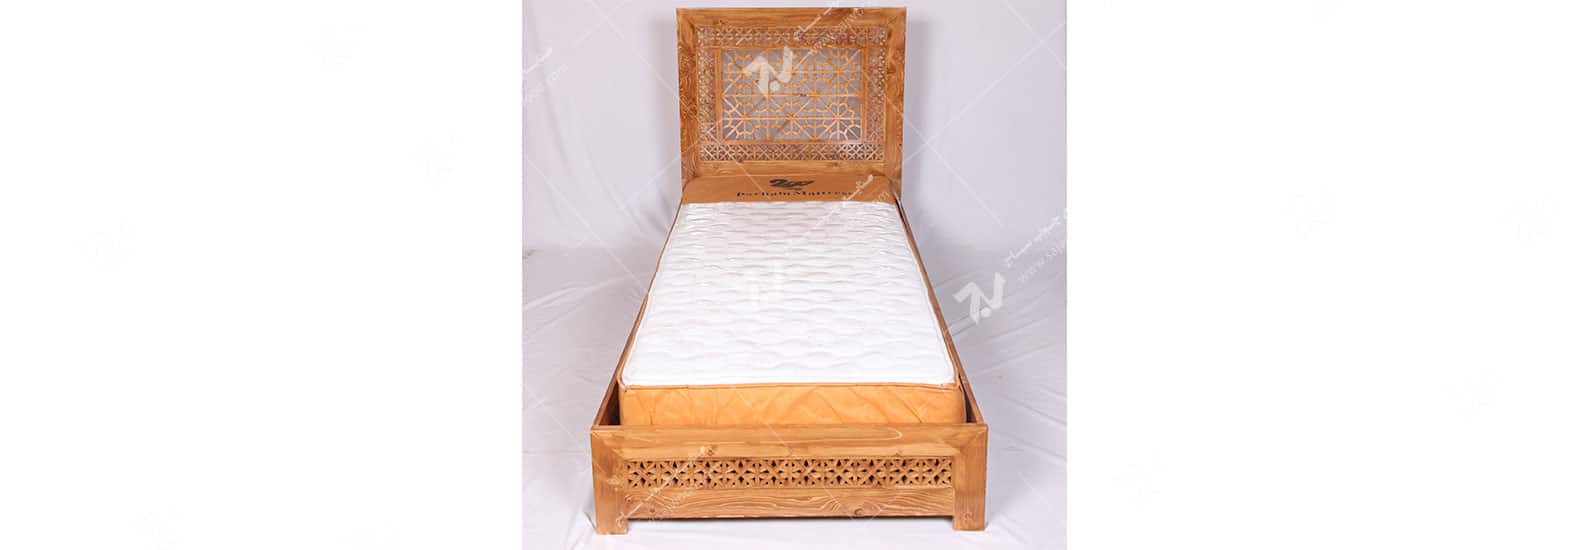 تخت خواب چوبی سنتی تک نفره گره چینی مشبک - رامش کد ۴۰۰